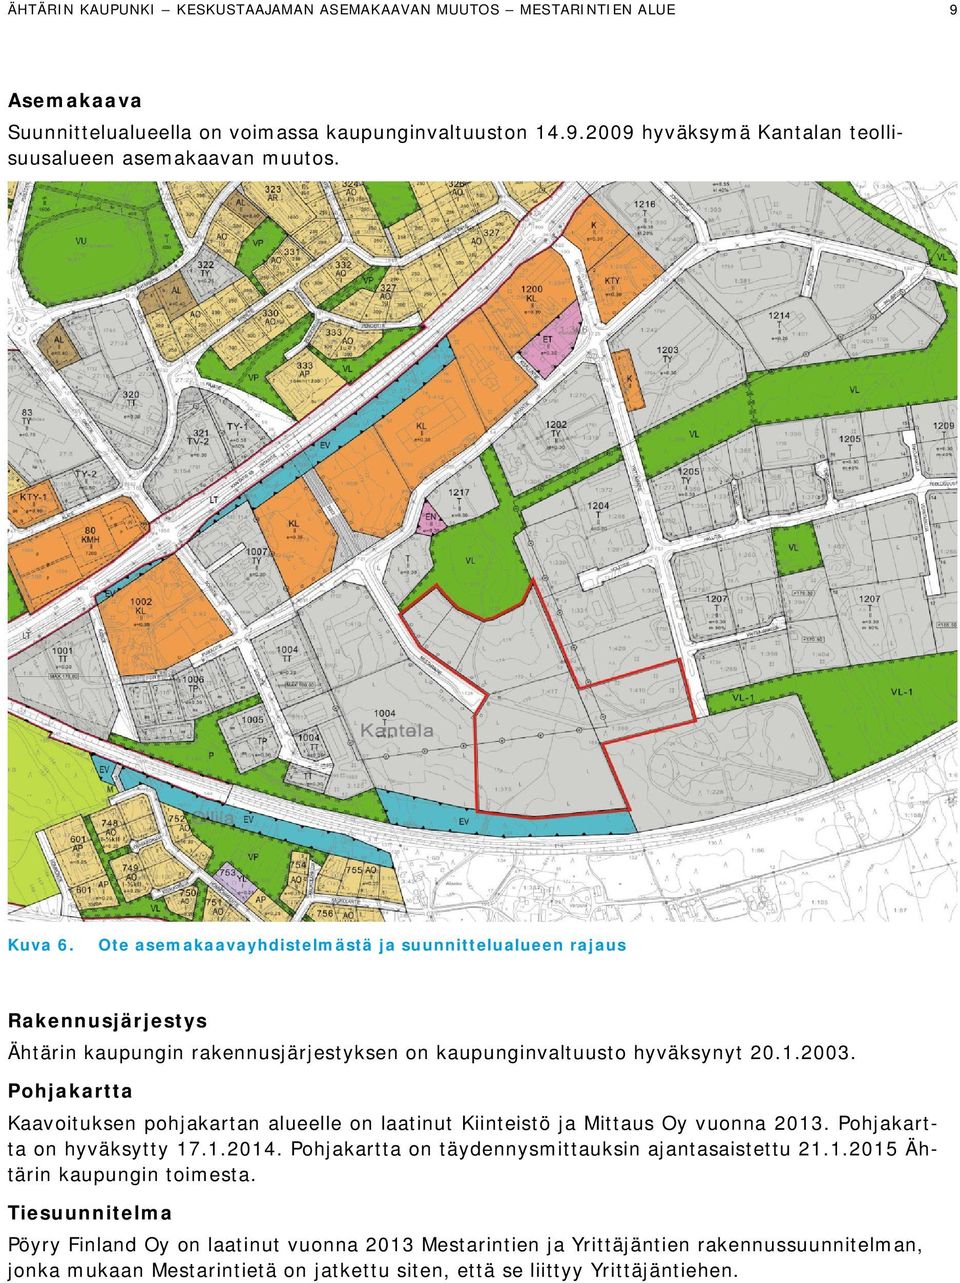 Pohjakartta Kaavoituksen pohjakartan alueelle on laatinut Kiinteistö ja Mittaus Oy vuonna 2013. Pohjakartta on hyväksytty 17.1.2014. Pohjakartta on täydennysmittauksin ajantasaistettu 21.1.2015 Ähtärin kaupungin toimesta.